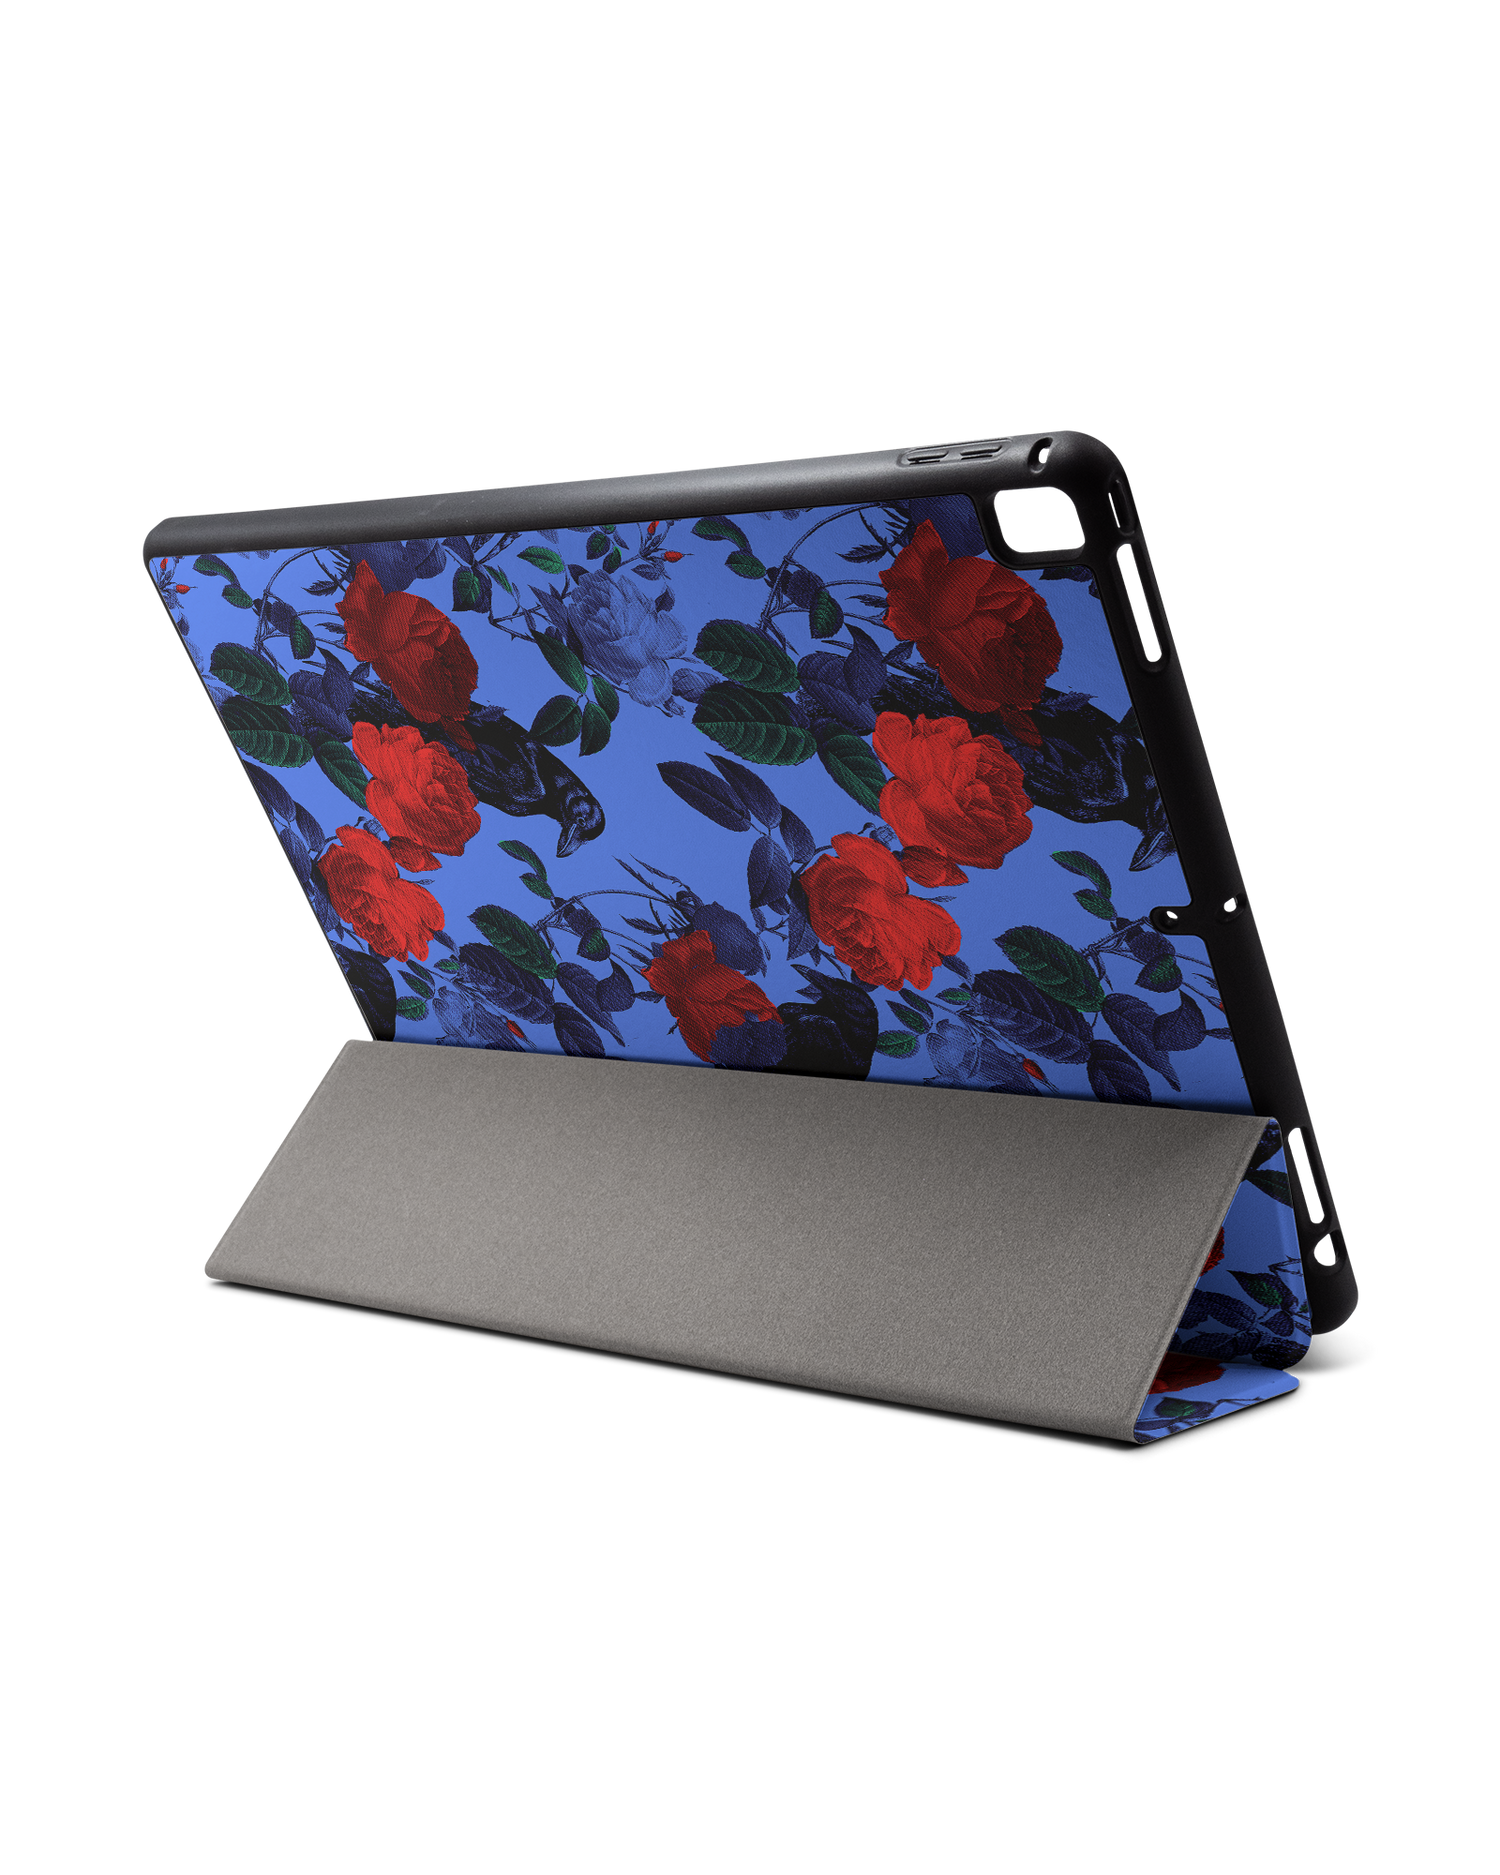 Roses And Ravens iPad Hülle mit Stifthalter für Apple iPad Pro 2 12.9'' (2017): Aufgestellt im Querformat von hinten